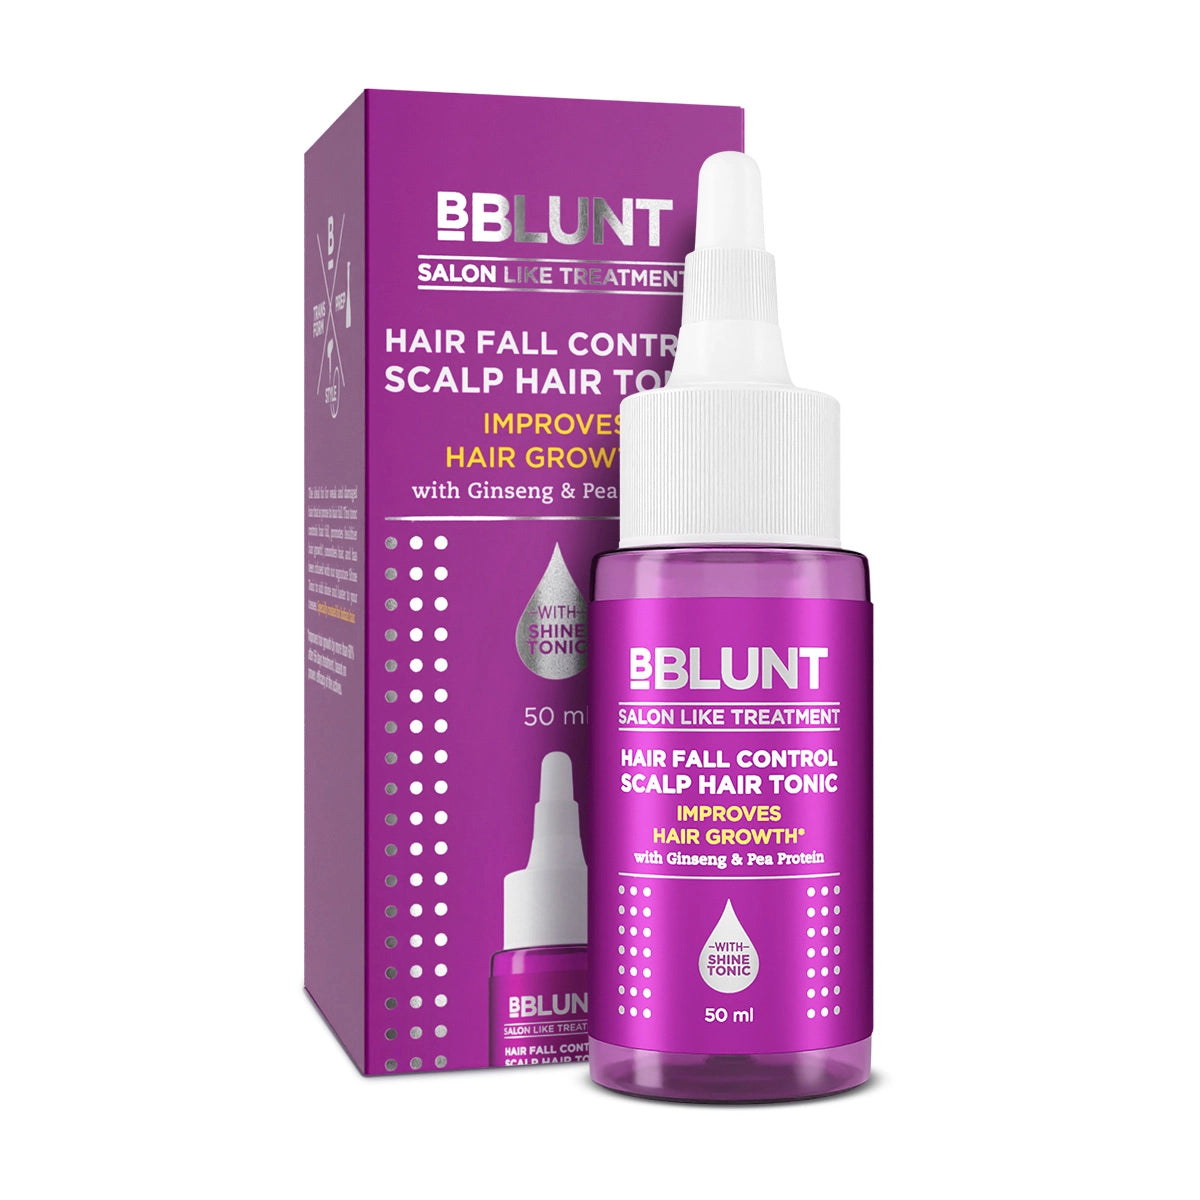 BBLUNT Hair Fall Control Scalp Hair Tonic - 50 ml